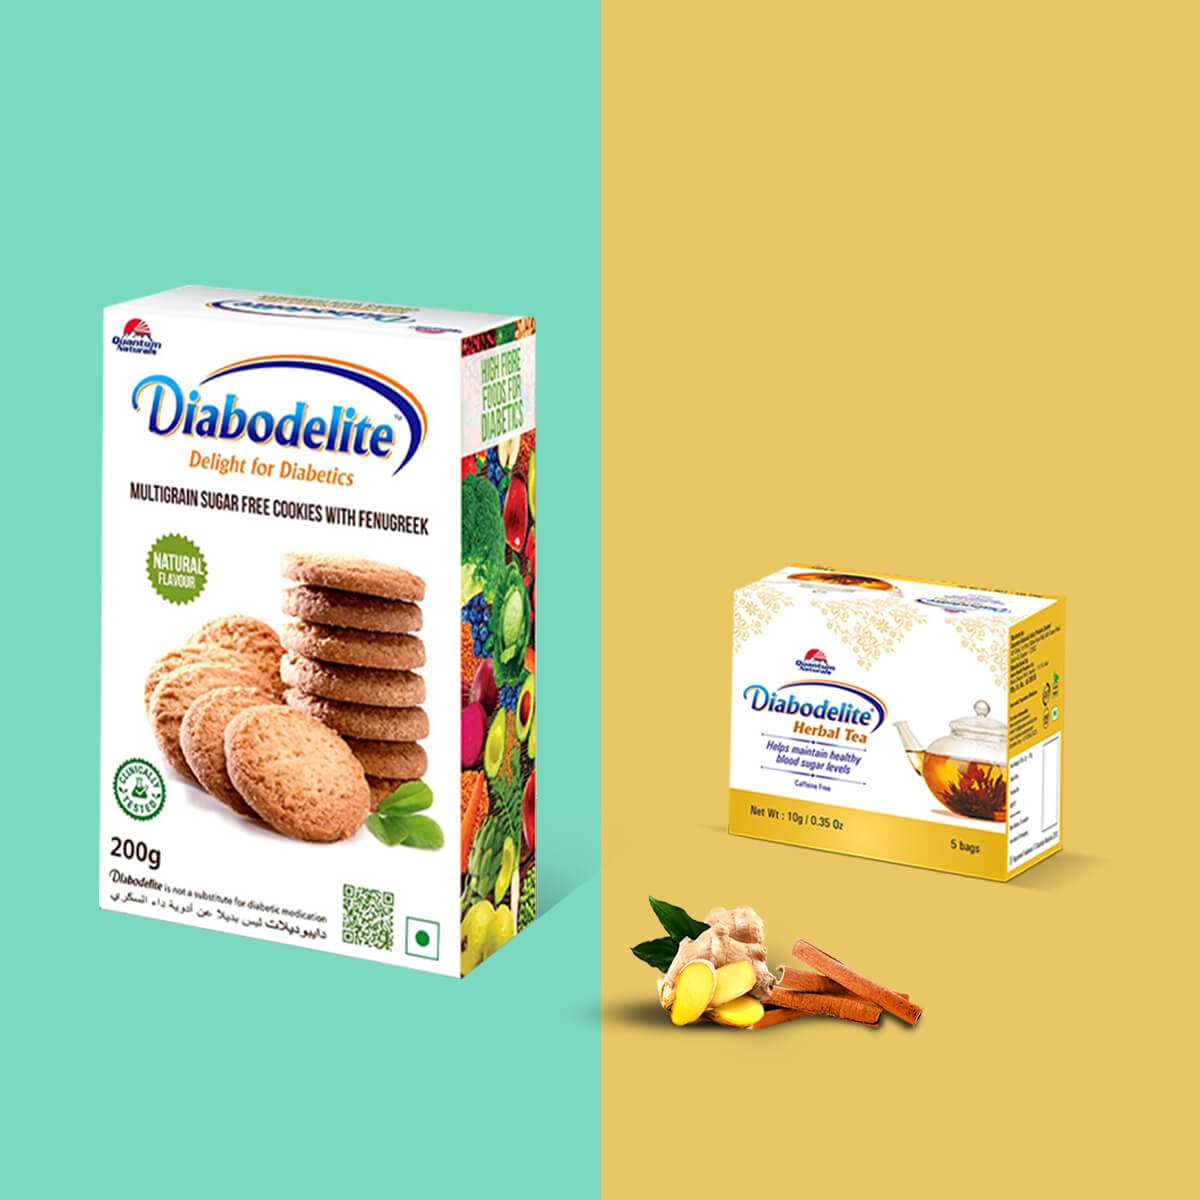 Diabodelite Cookies + Diabodelite Tea Pack of 5 Free